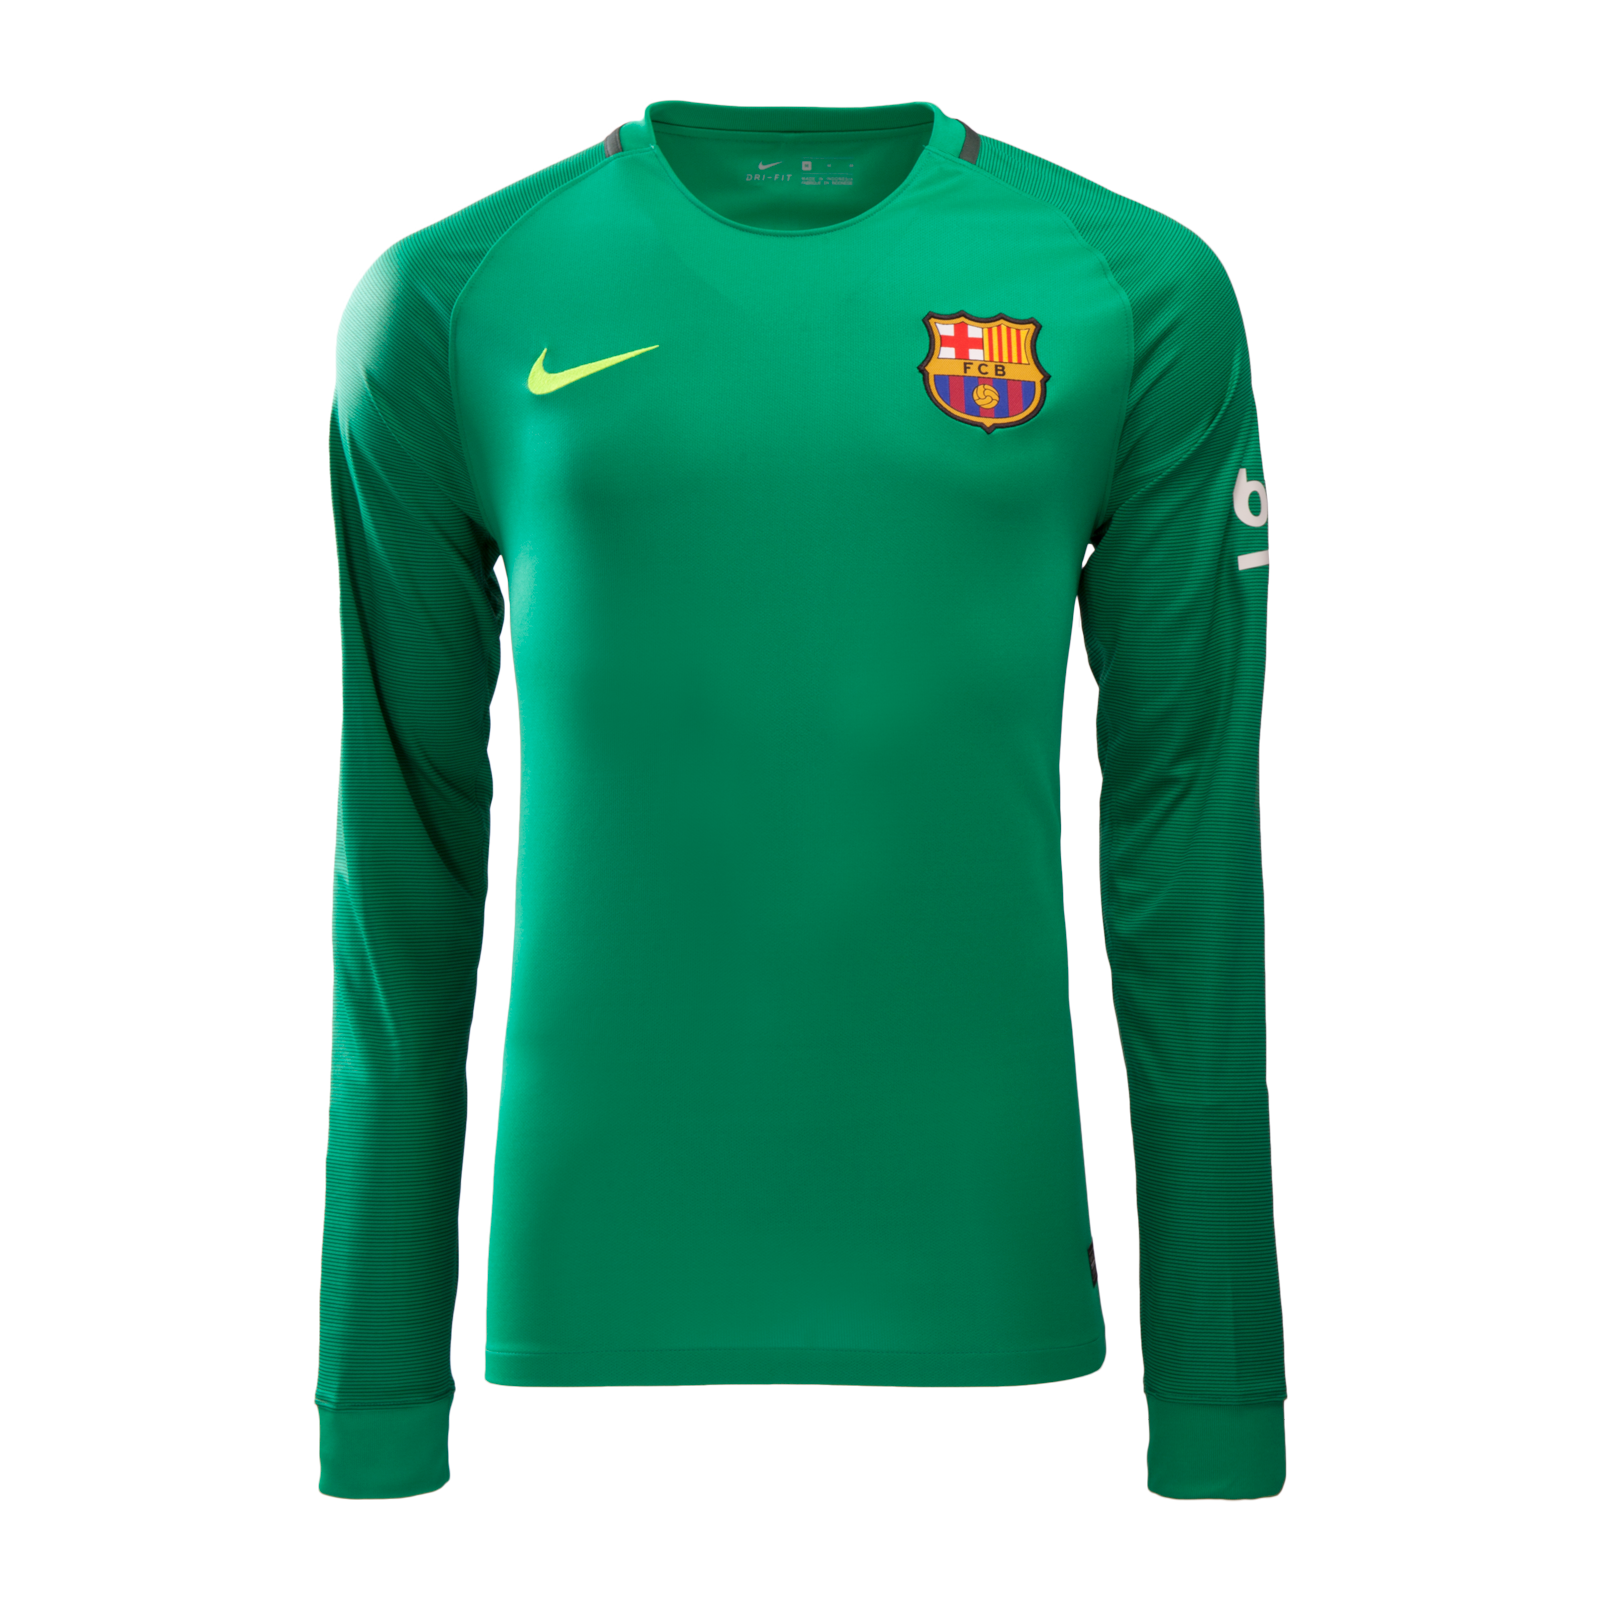 Barcelona Goalkeeper Soccer Jersey 16/17 LS Green